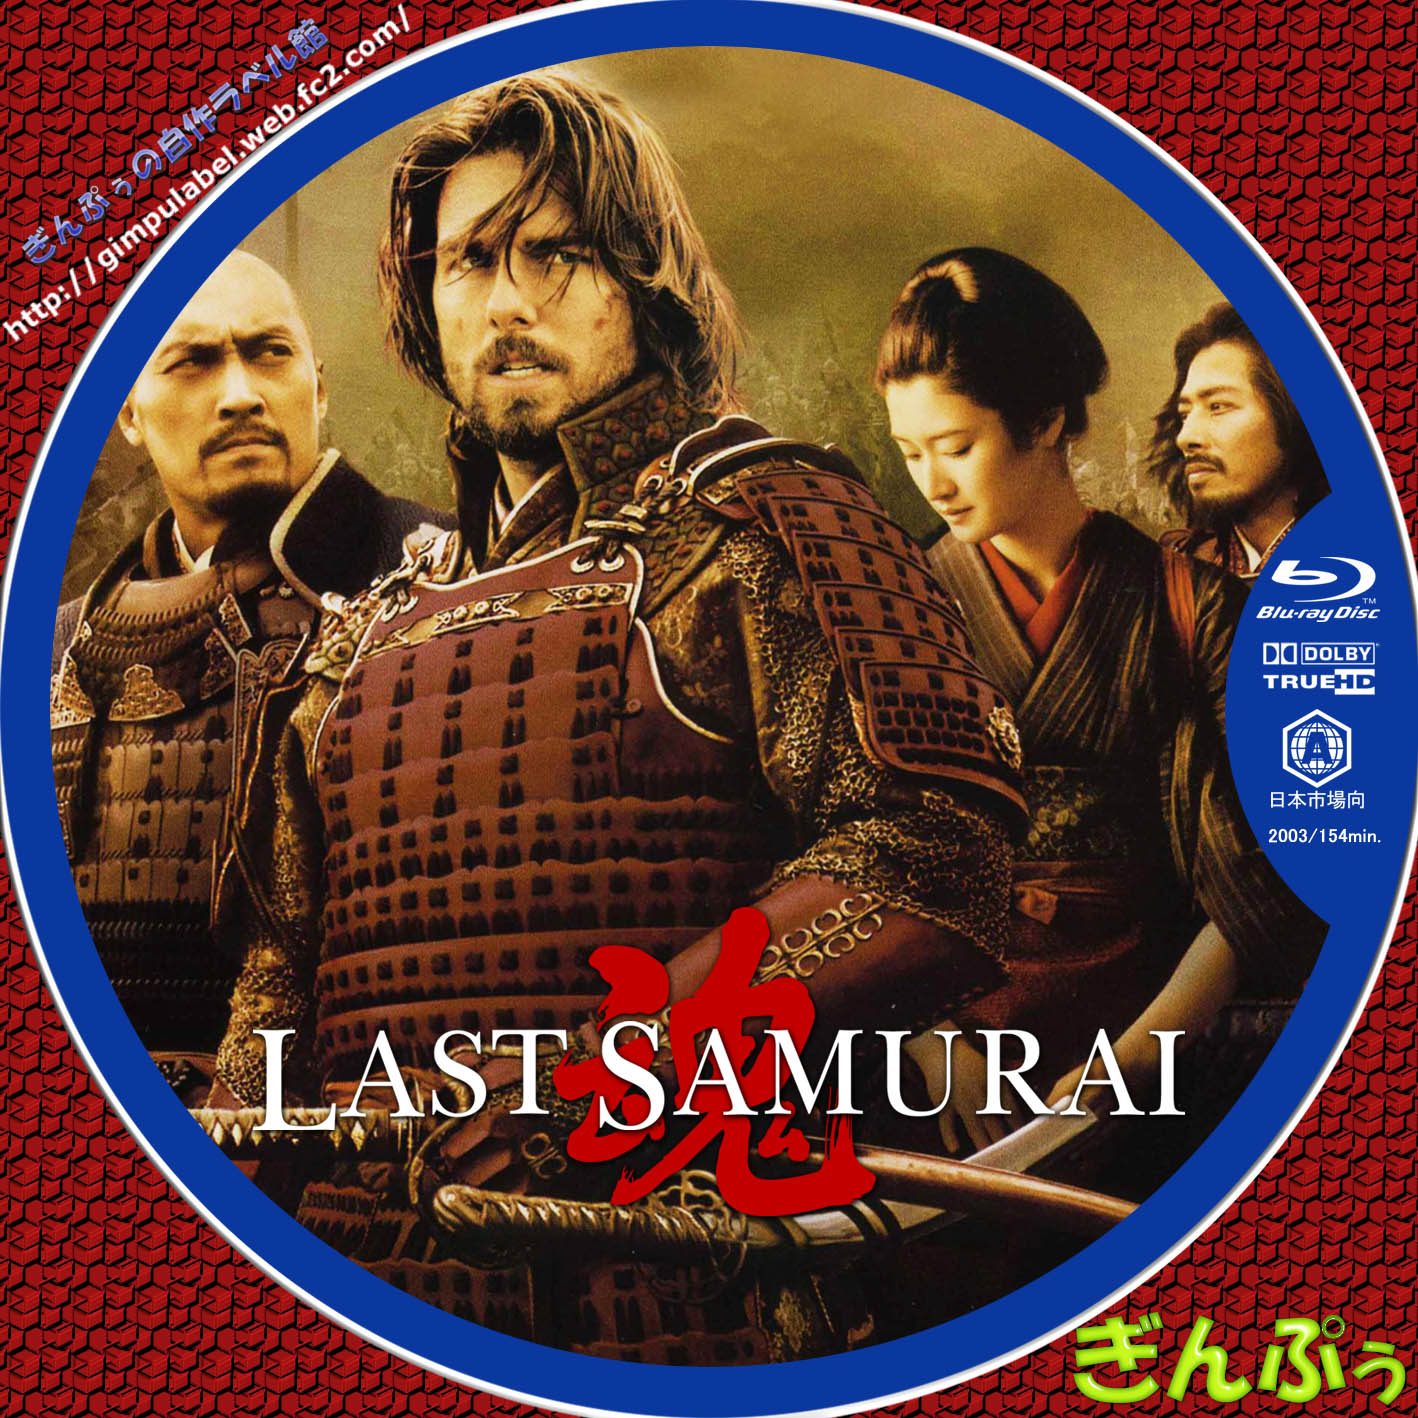 ラスト サムライ 原題 The Last Samurai ぎんぷぅのbｌu Rayラベル